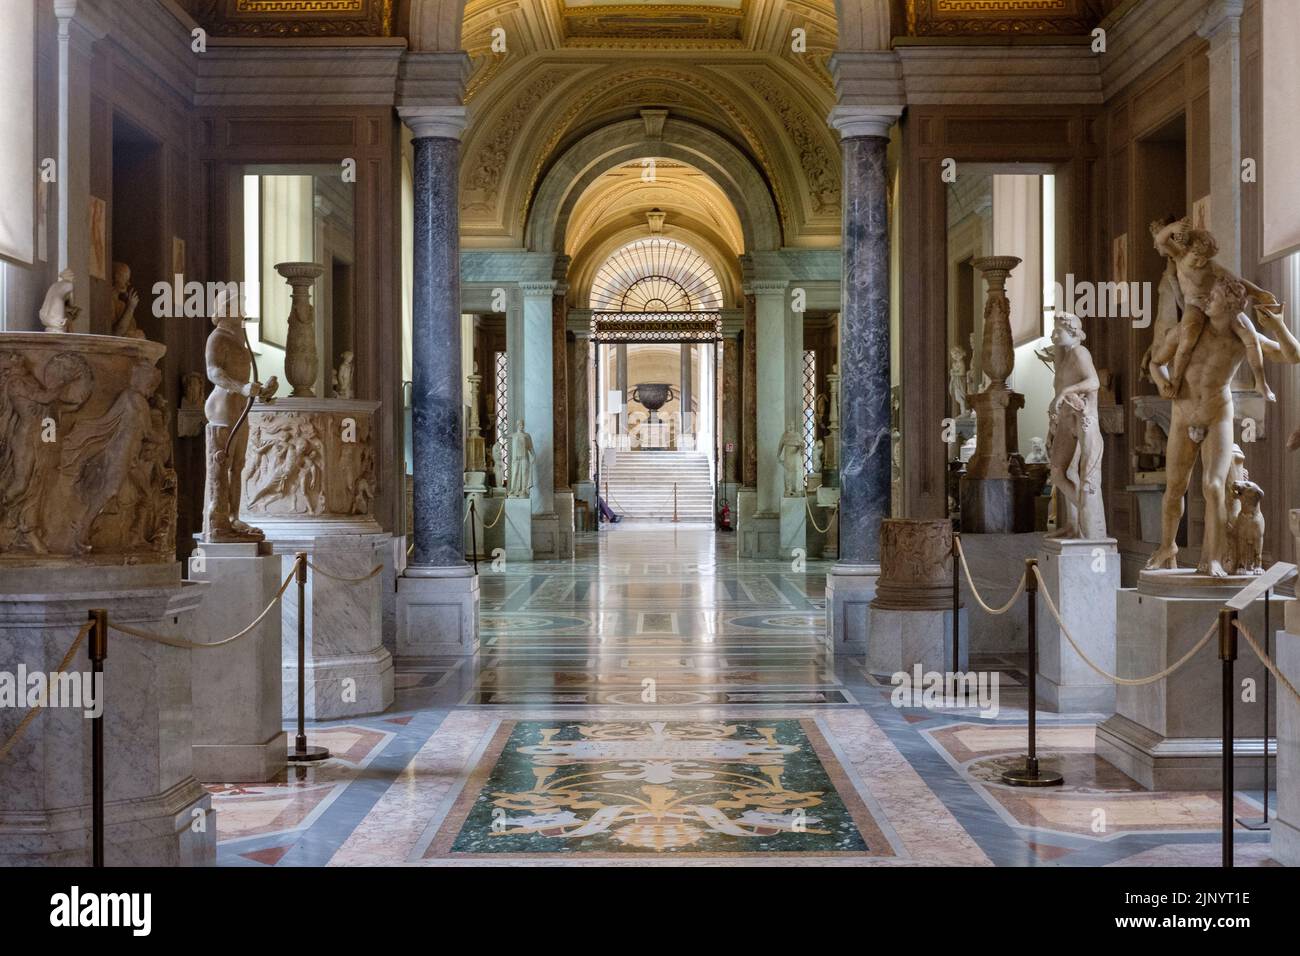 Im Inneren der Vatikanischen Museen in der Vatikanstadt, Rom, Italien, im Jahr 2018. Stockfoto